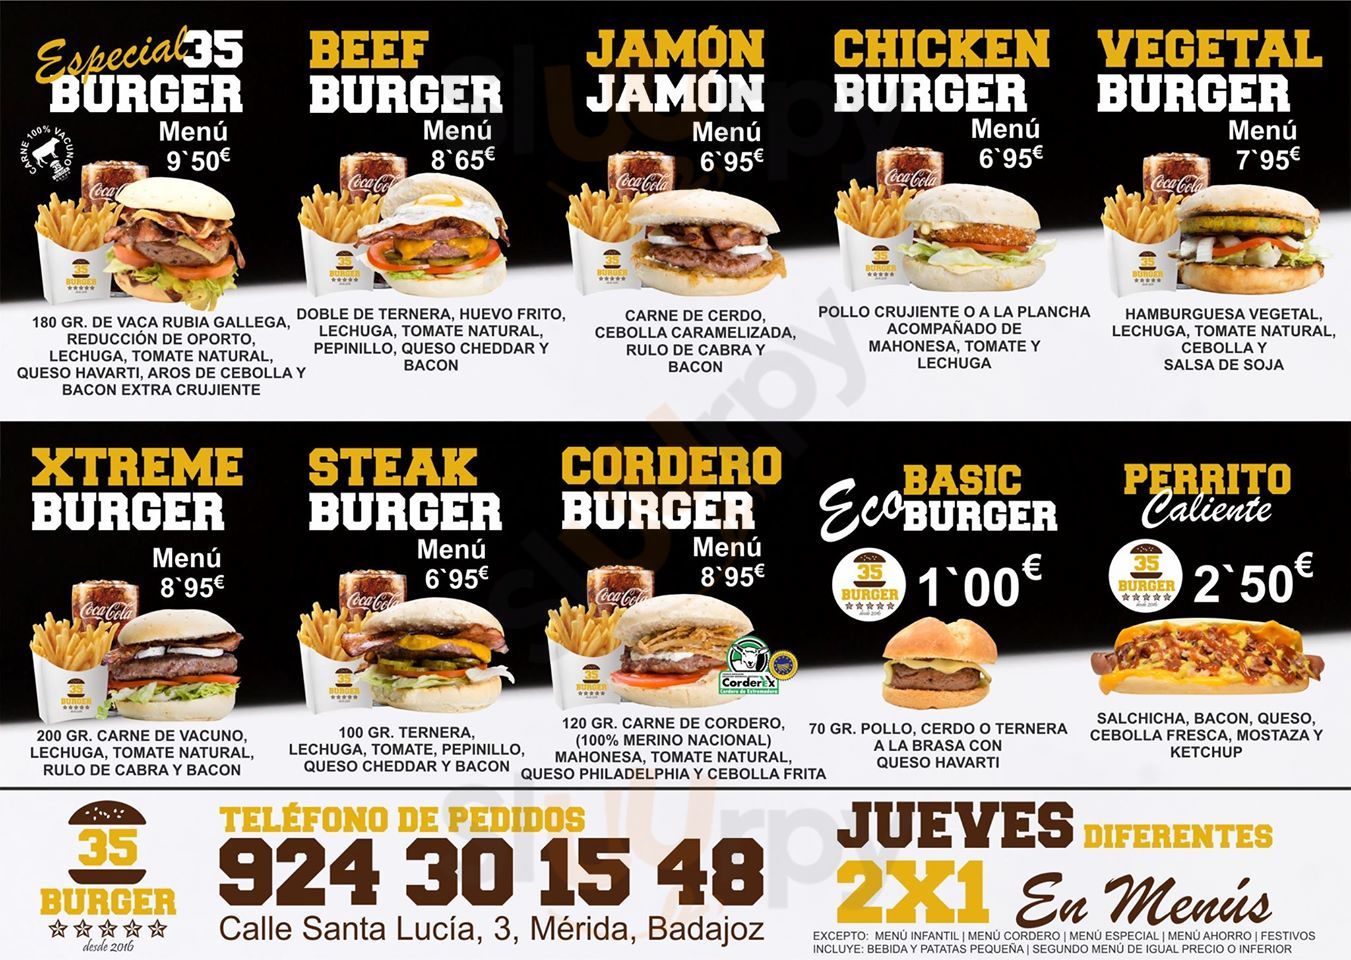 35 Burger Mérida Menu - 1